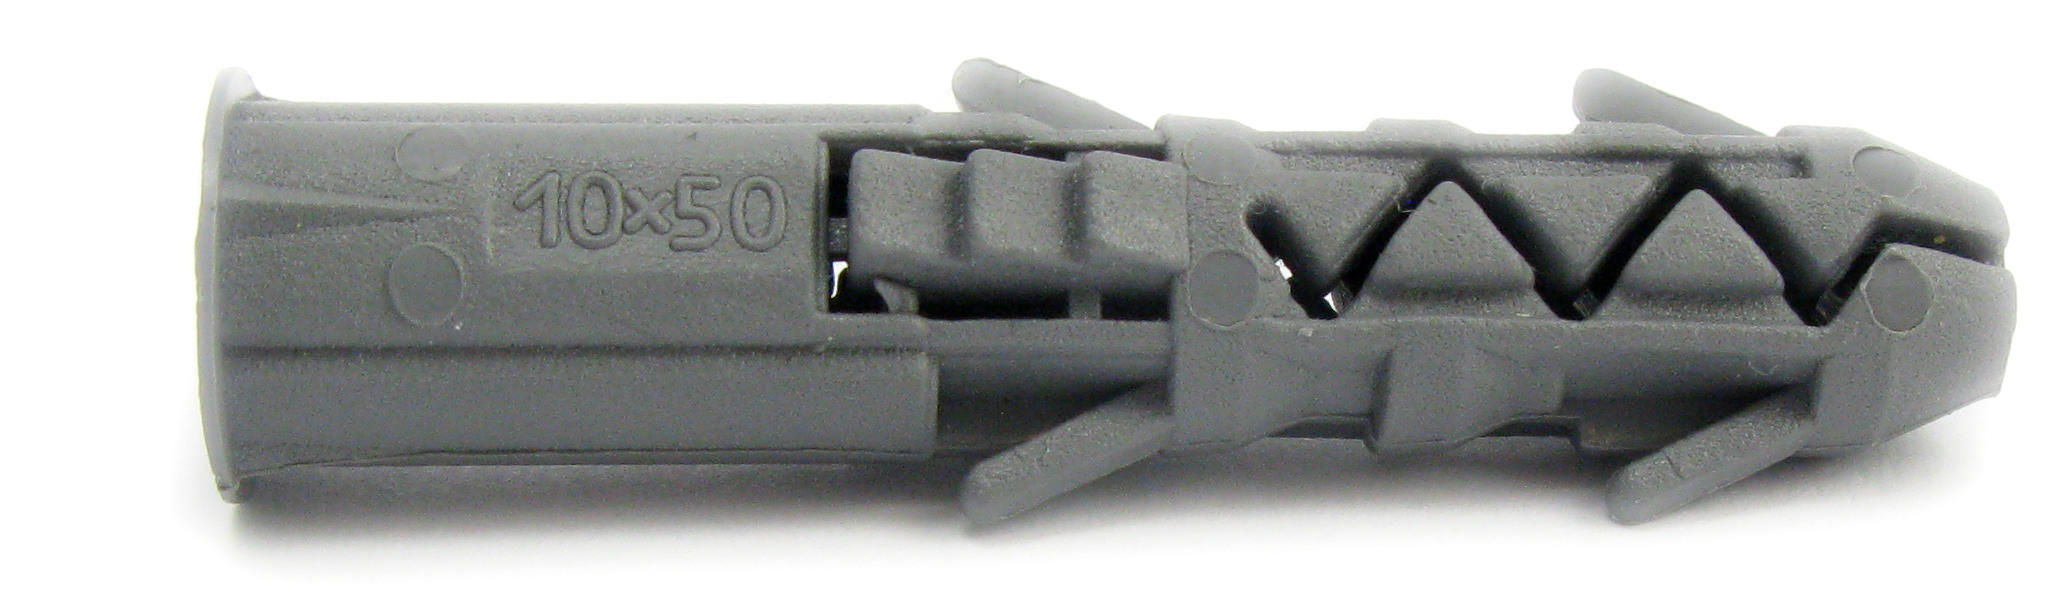 Дюбель універсальний полипропилен, з бортиком. Розмір  8х40 під шуруп Ø 5,0-5,5 (уп 150 шт) 